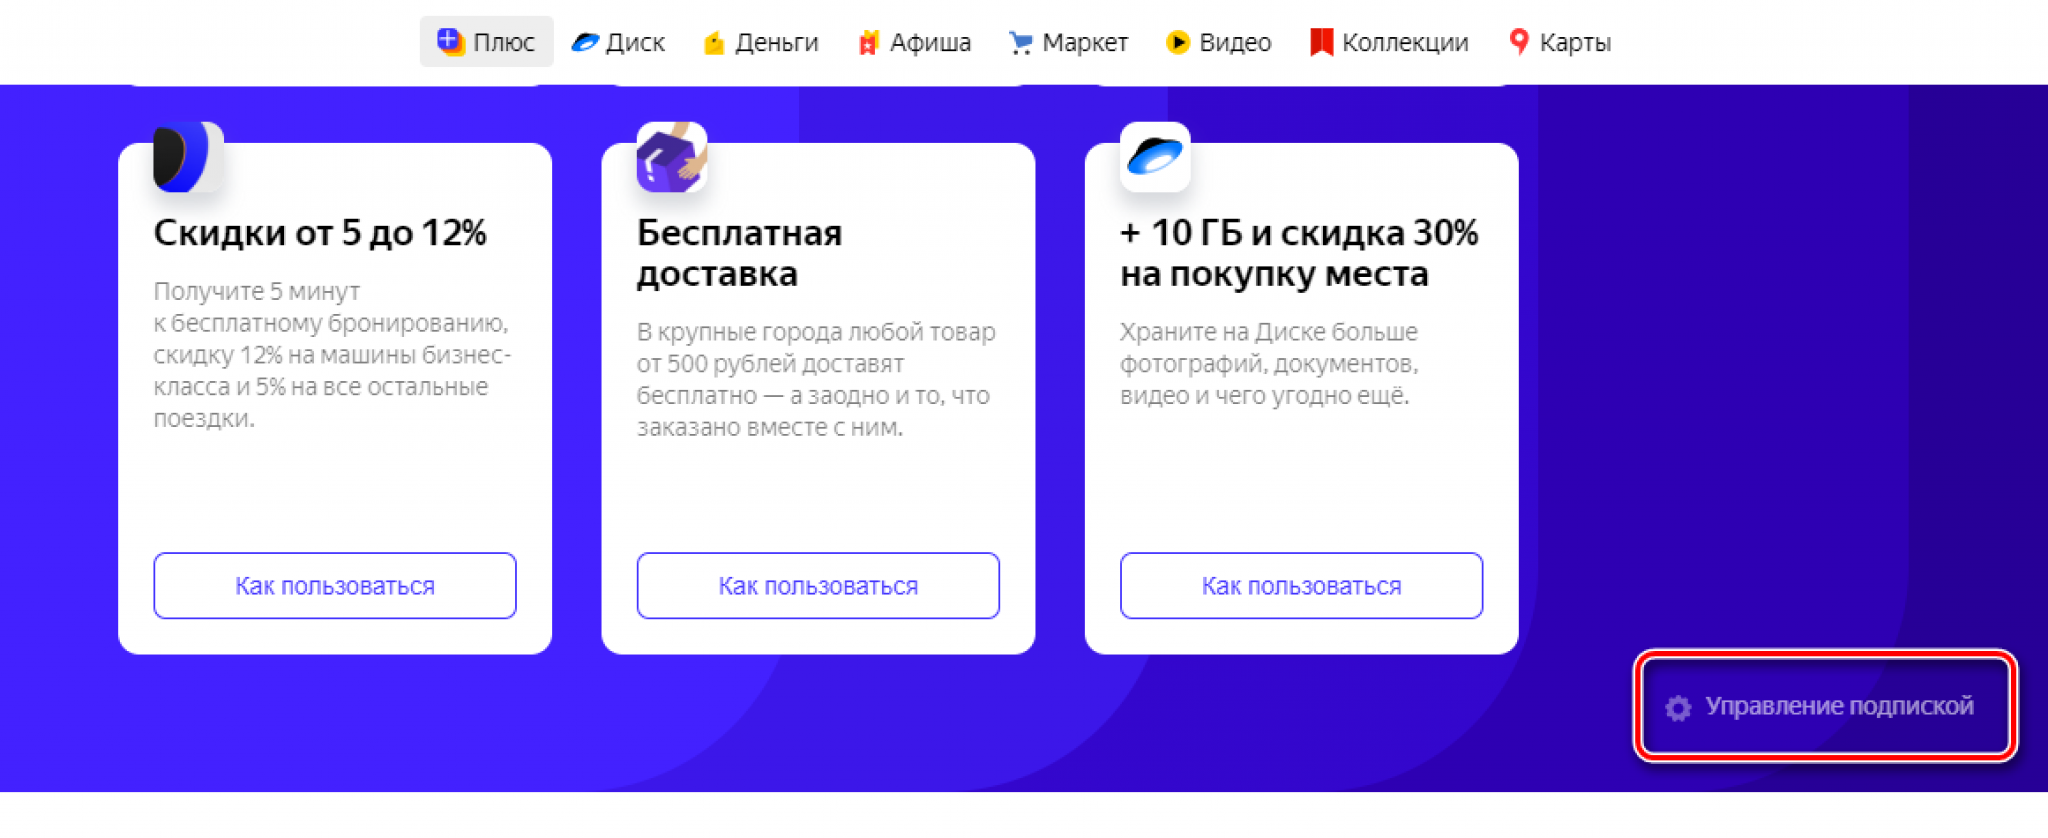 Яндекс.музыка без подписки - можно ли скачать песни и плейлисты?